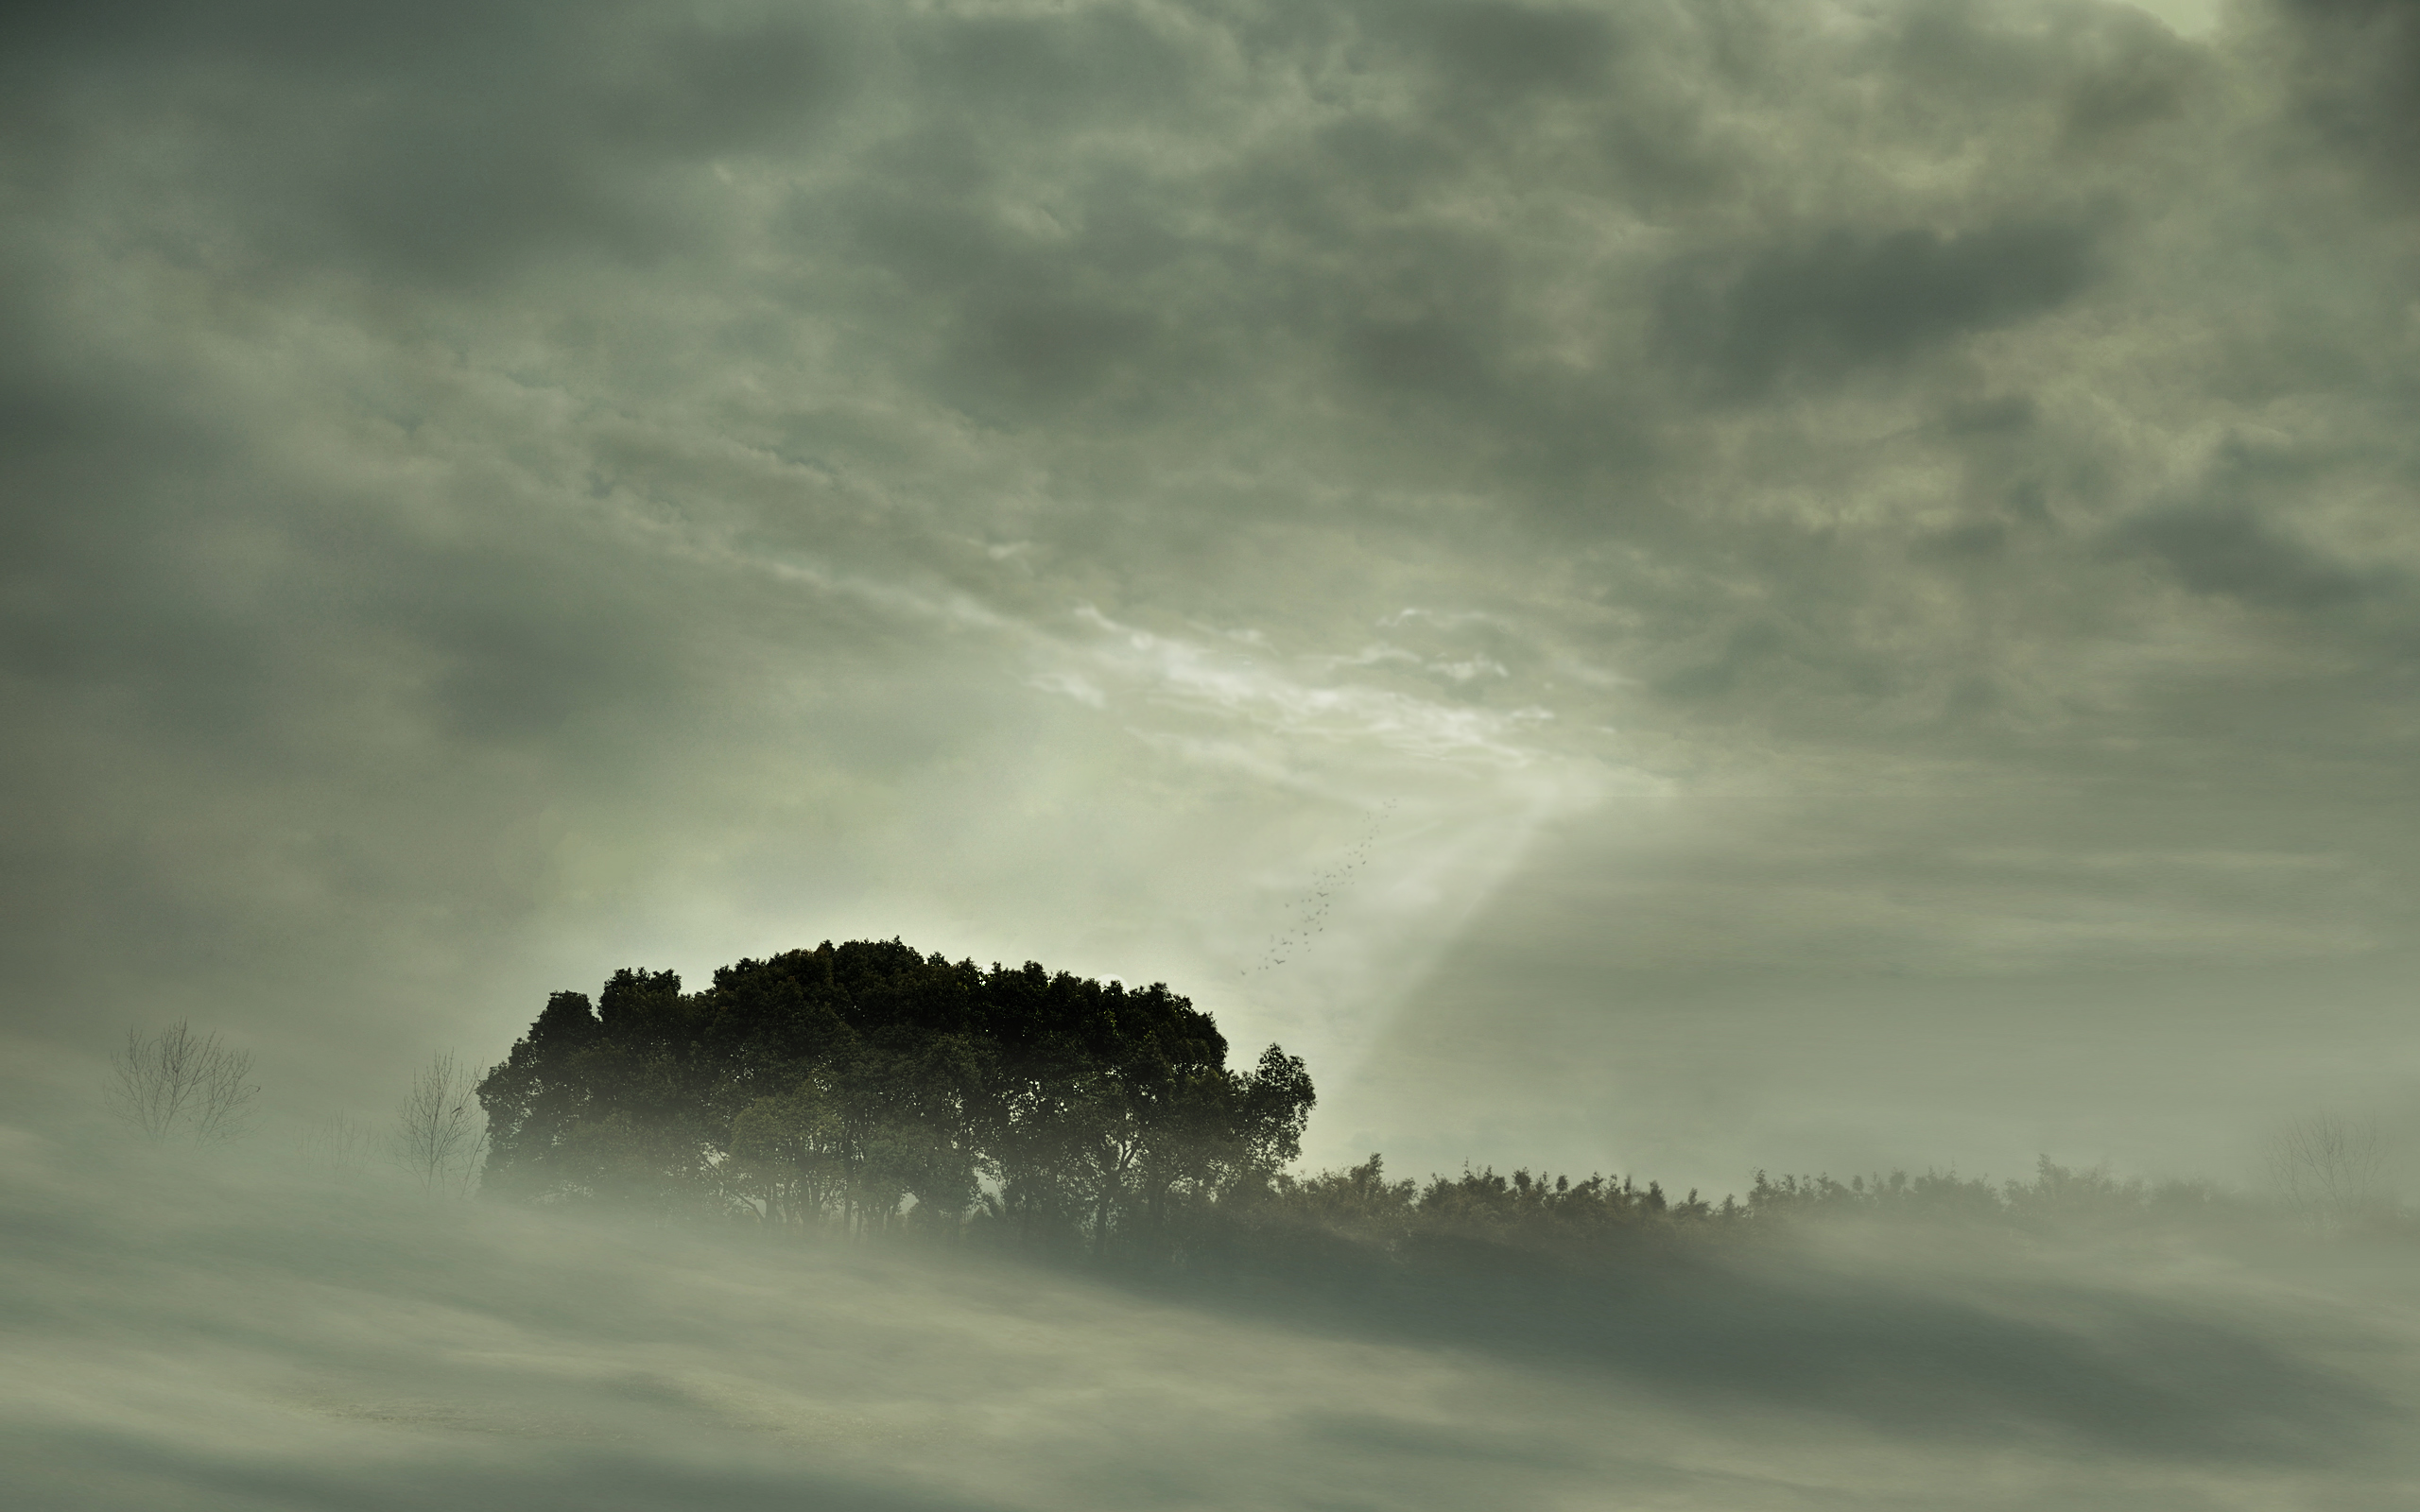 clouds, landscapes, nature, trees, mist, sunlight, monochrome - desktop wallpaper